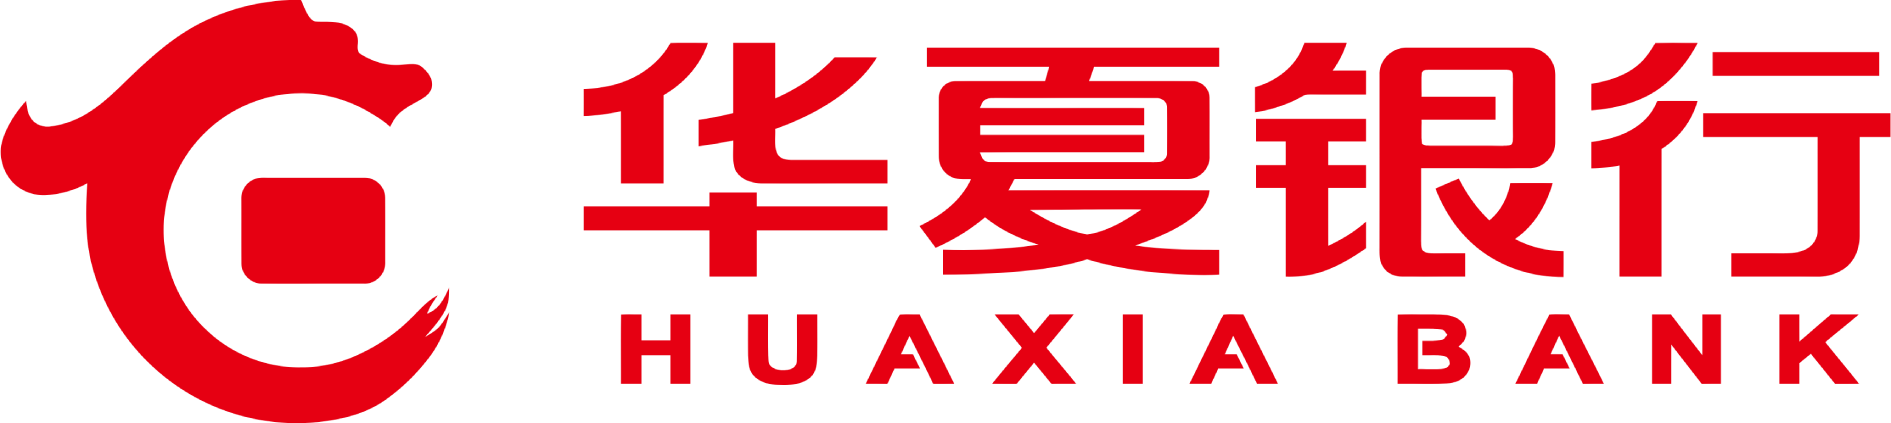 Hua Xia Bank logo large (transparent PNG)